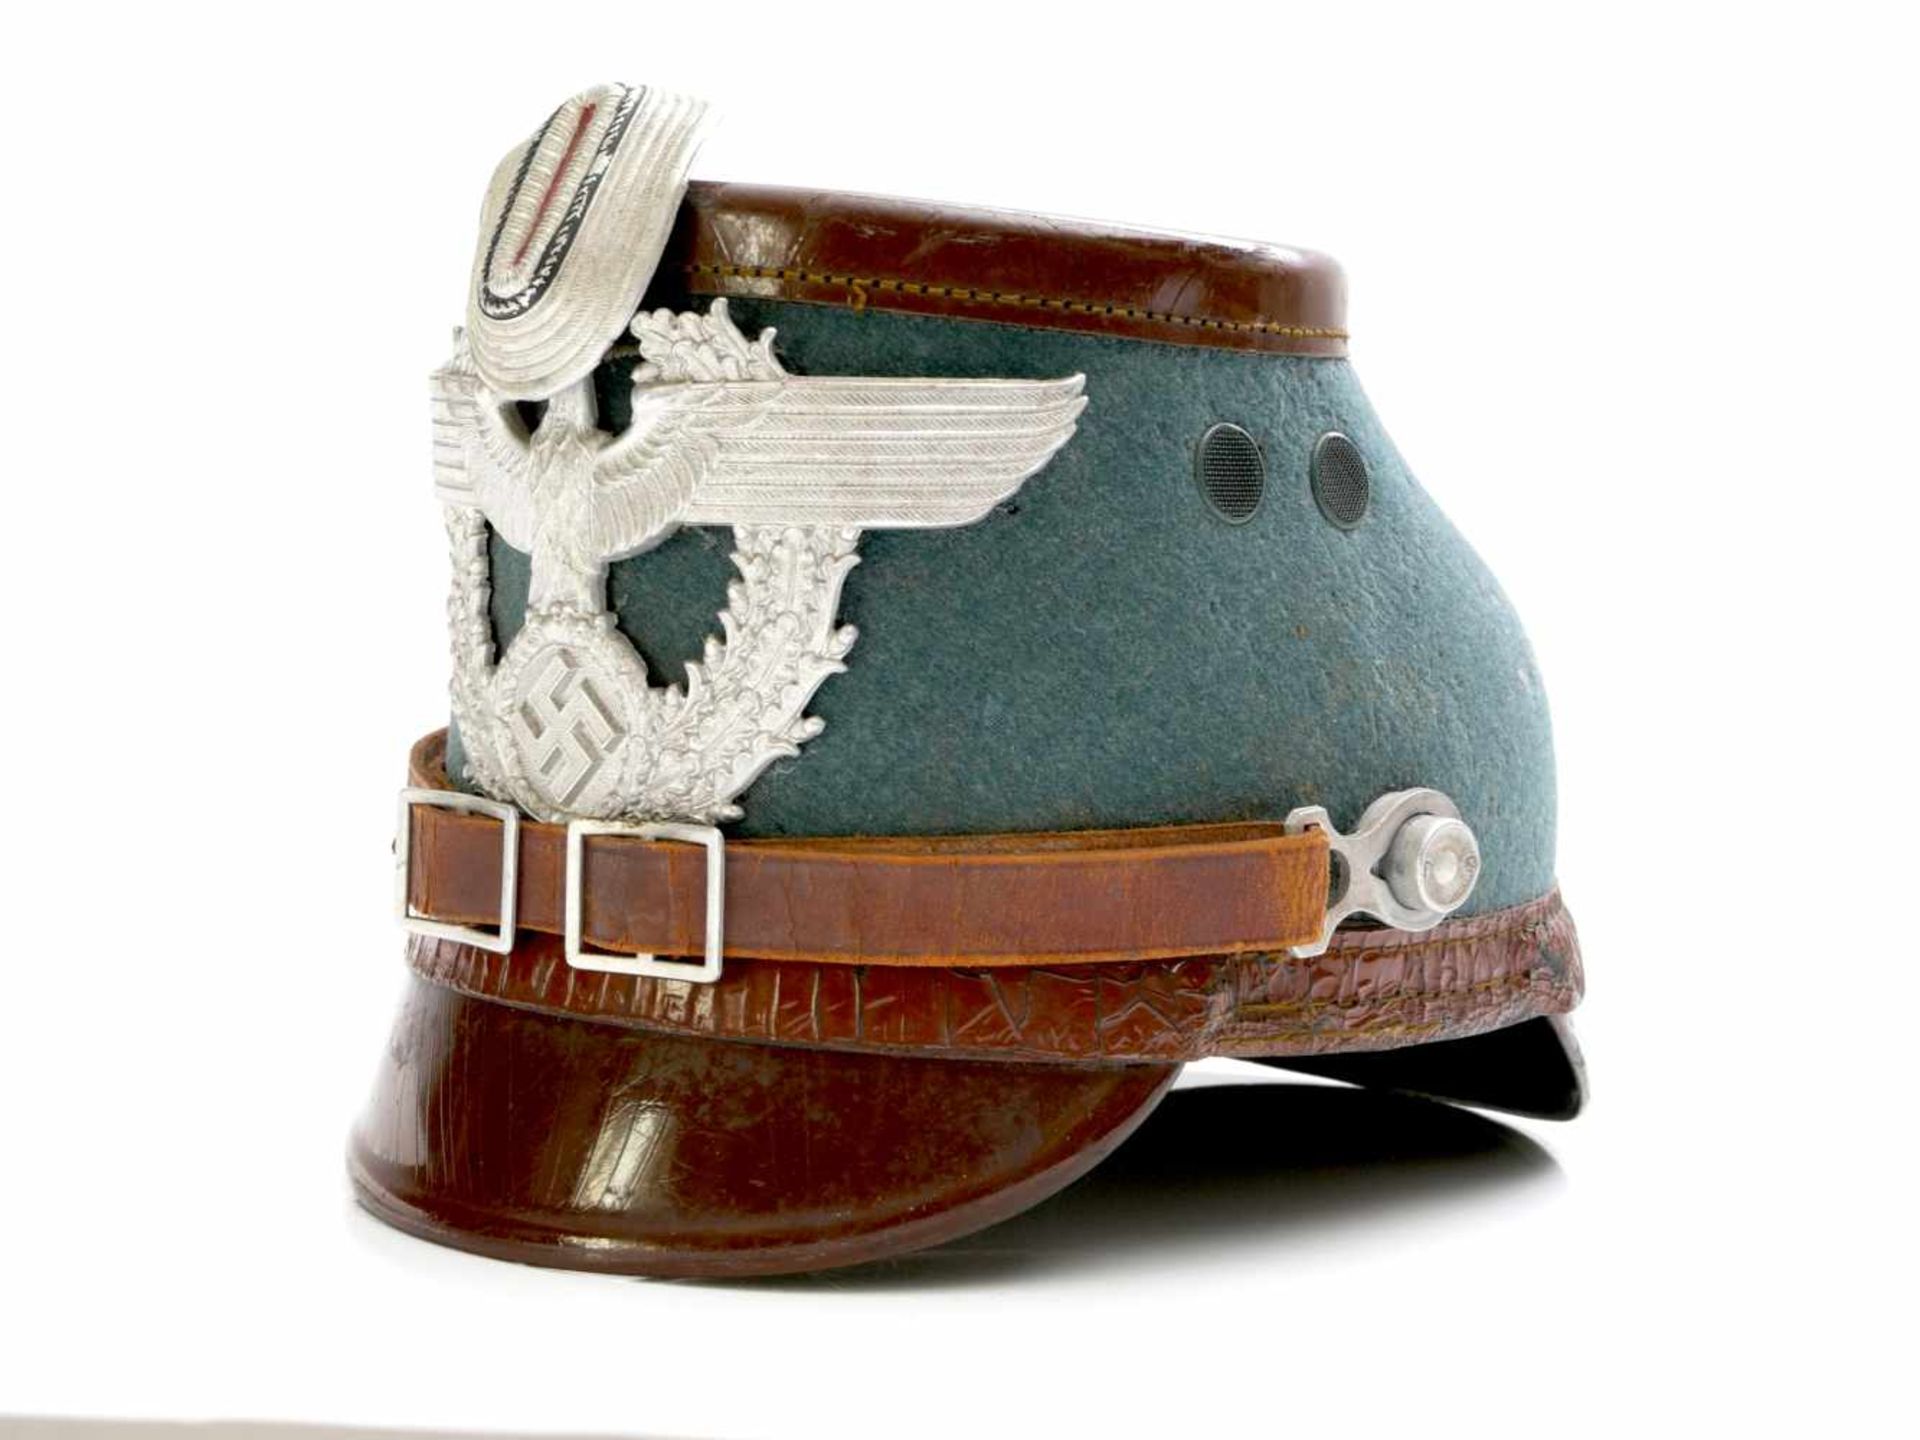 Tschako Mannschaften Gendarmerie Berlin 3. ReichFiberglas Helm, braunes Lackleder mit grünem